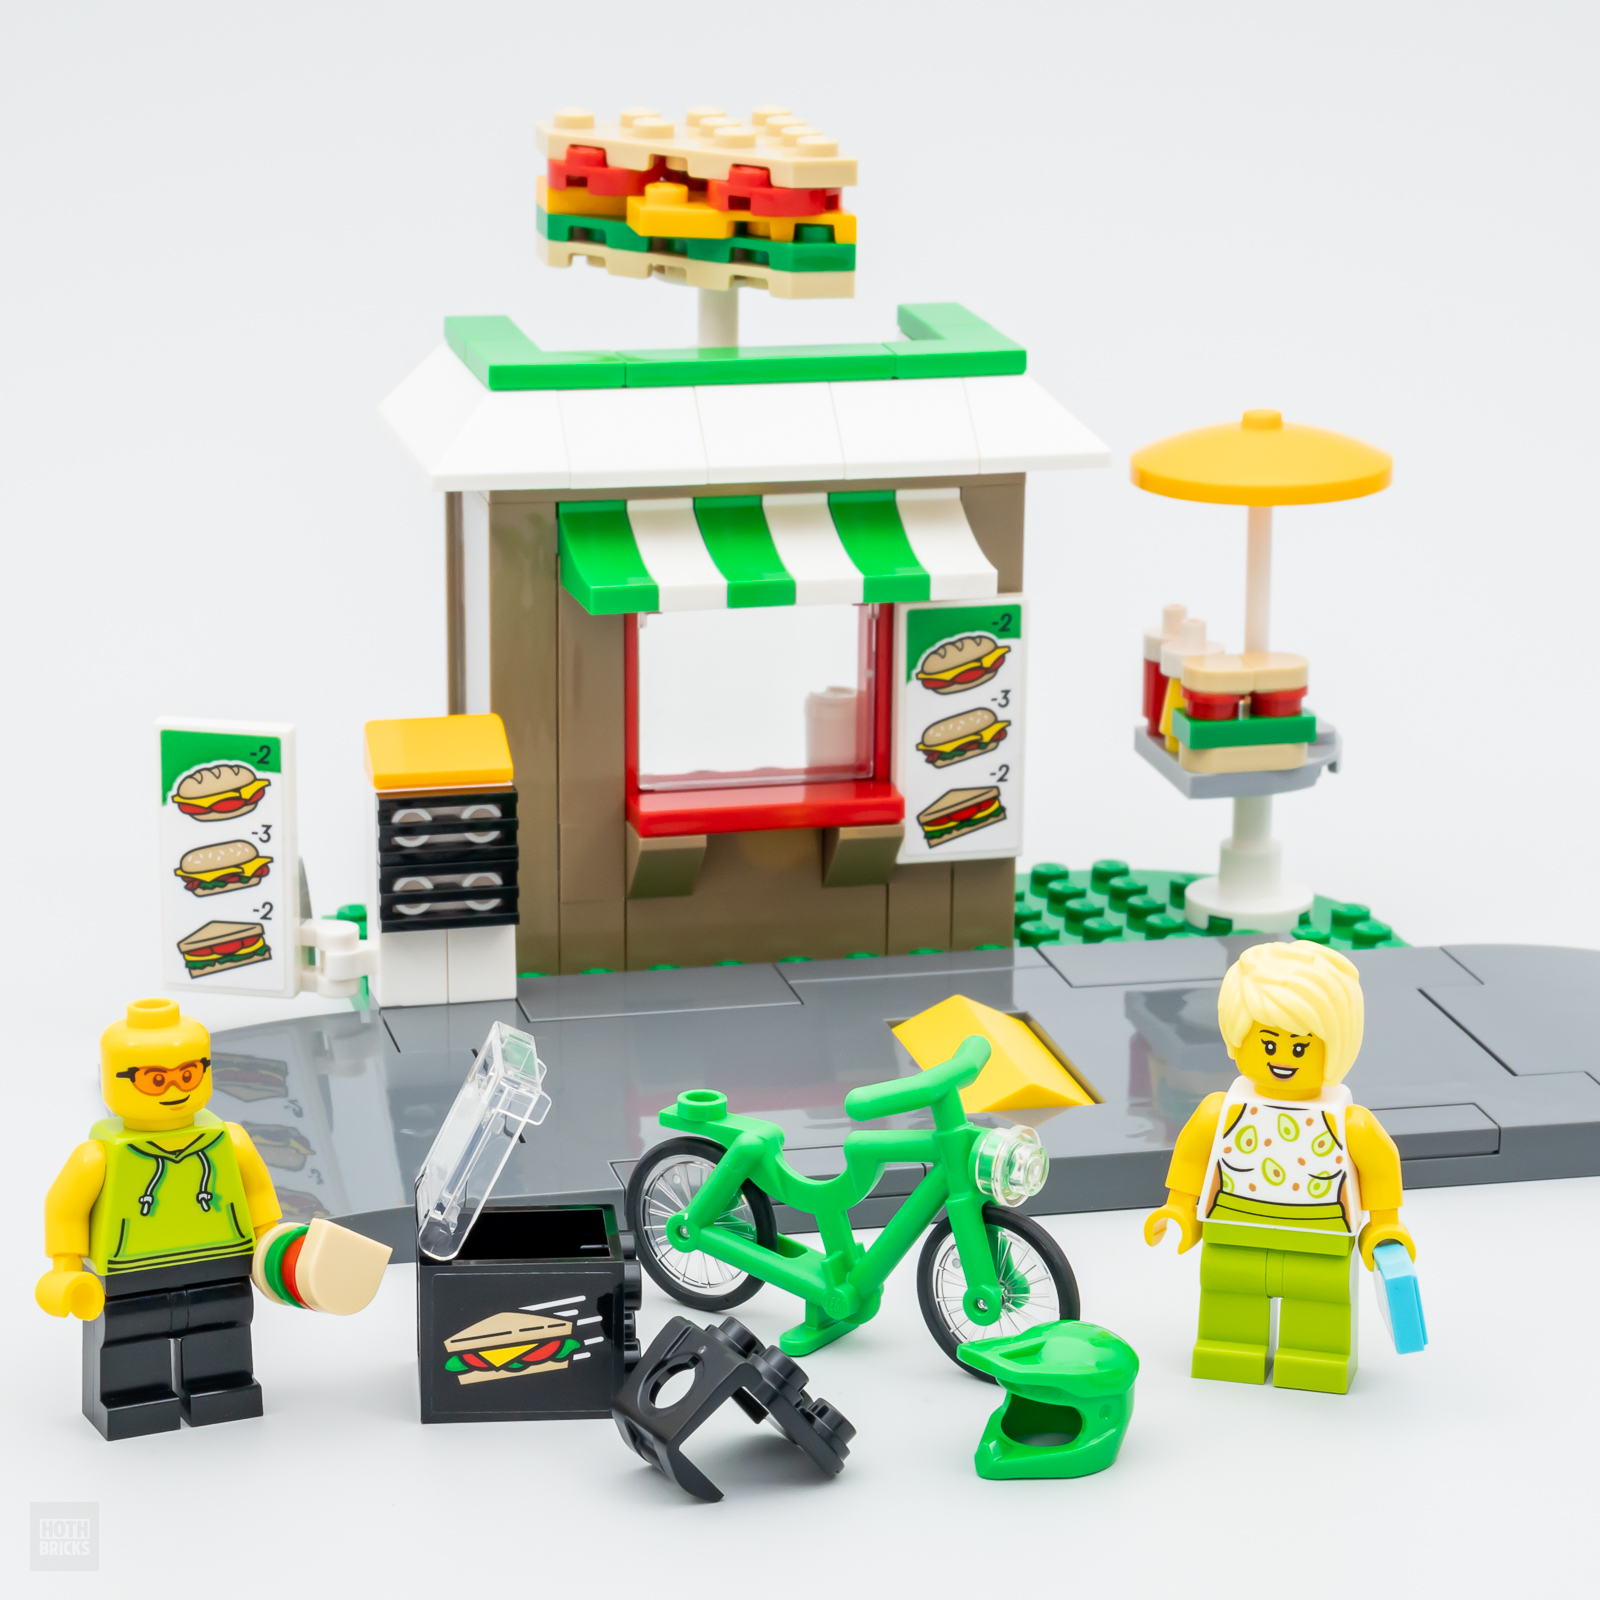 LEGO শপে: LEGO CITY 40578 স্যান্ডউইচ শপ সেট বিনামূল্যে €90 এর বেশি কেনাকাটায়